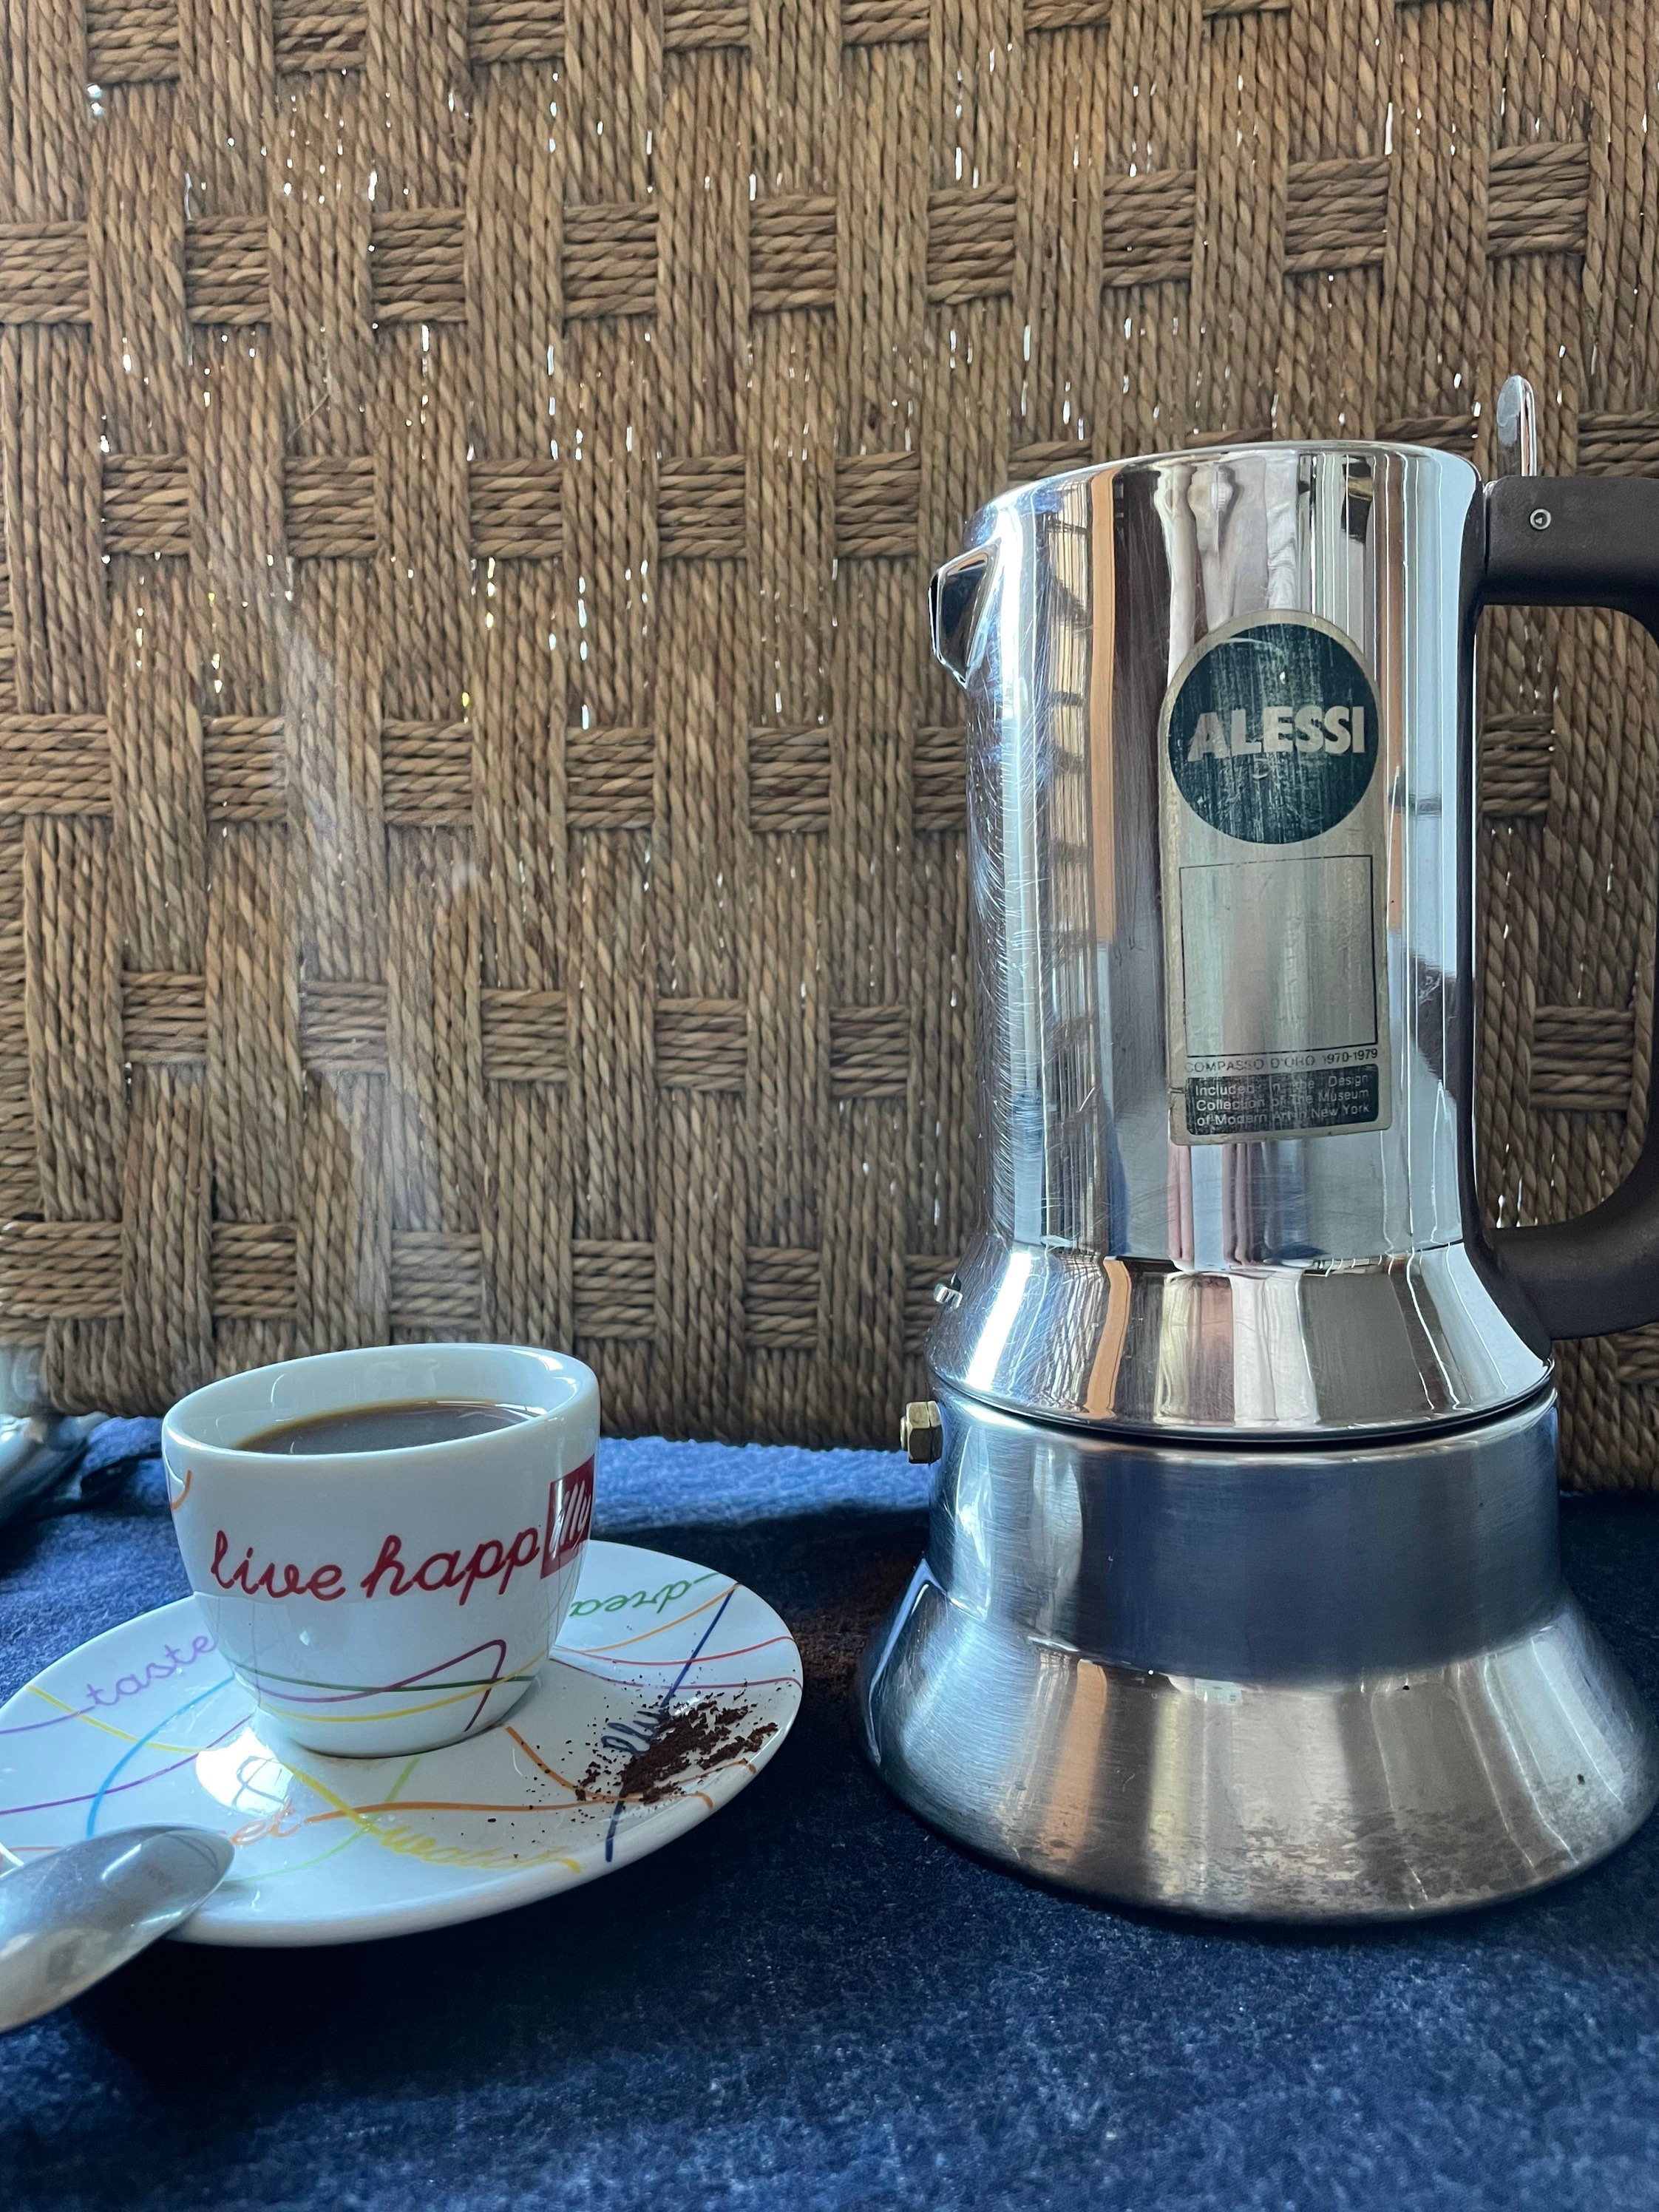 Alessi Espresso Maker 9090 by Richard Sapper, 6 Espresso Cups